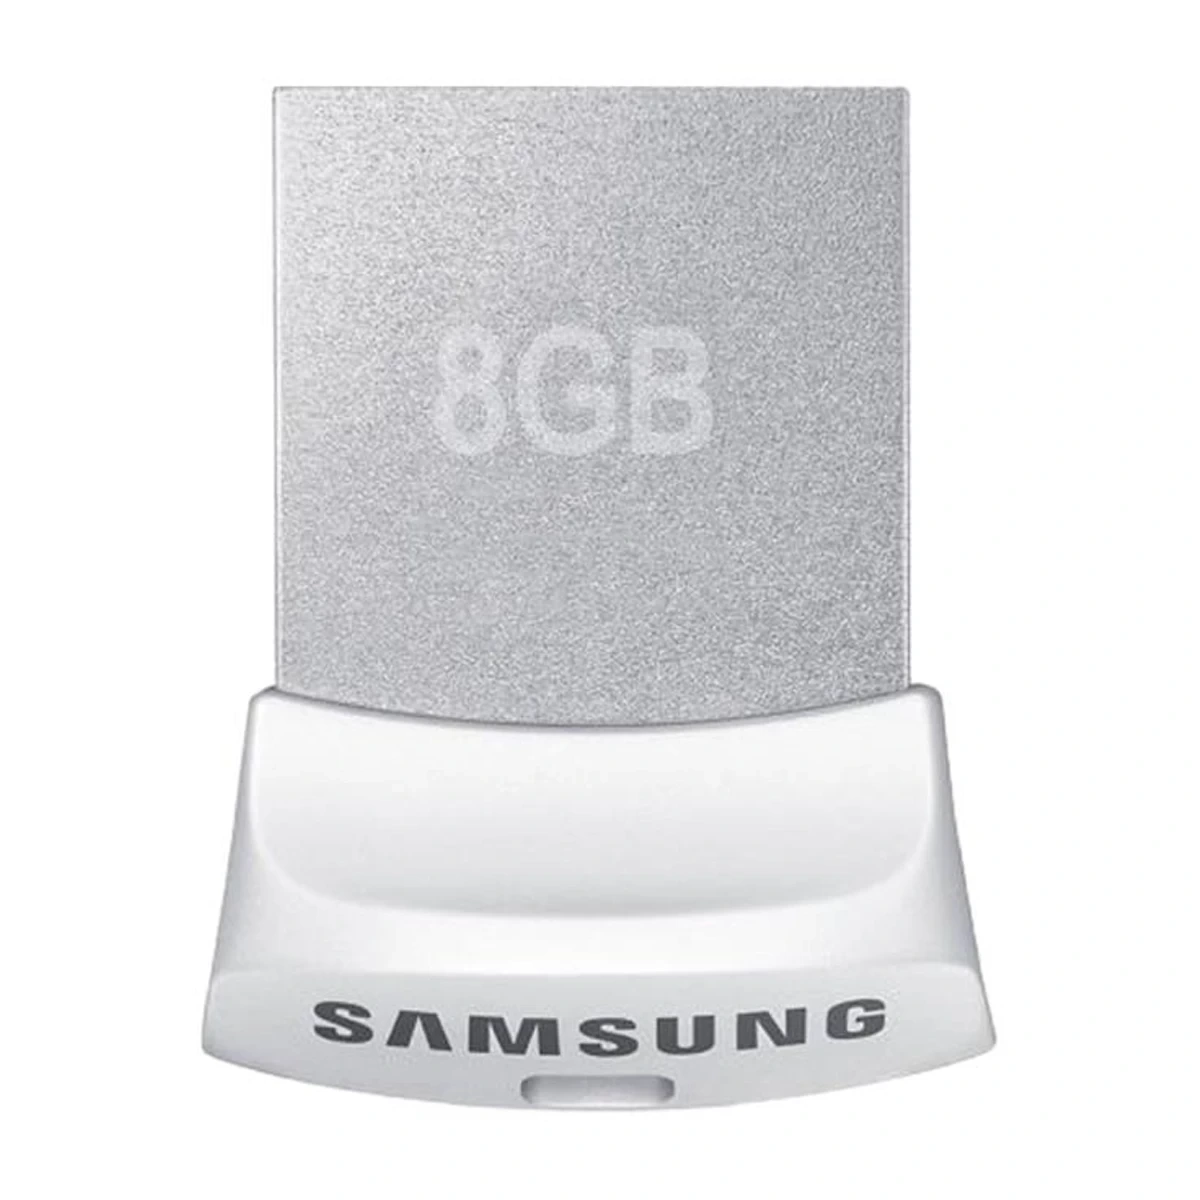 فلش مموری سامسونگ مدل Fit ظرفیت 8 گیگابایت | Samsung 8GB Fit USB Flash Drive ا Samsung 8GB USB 2.0 with Backward USB 3.0 Speed Life Time Warranty Orginal Fit USB Flash Drive